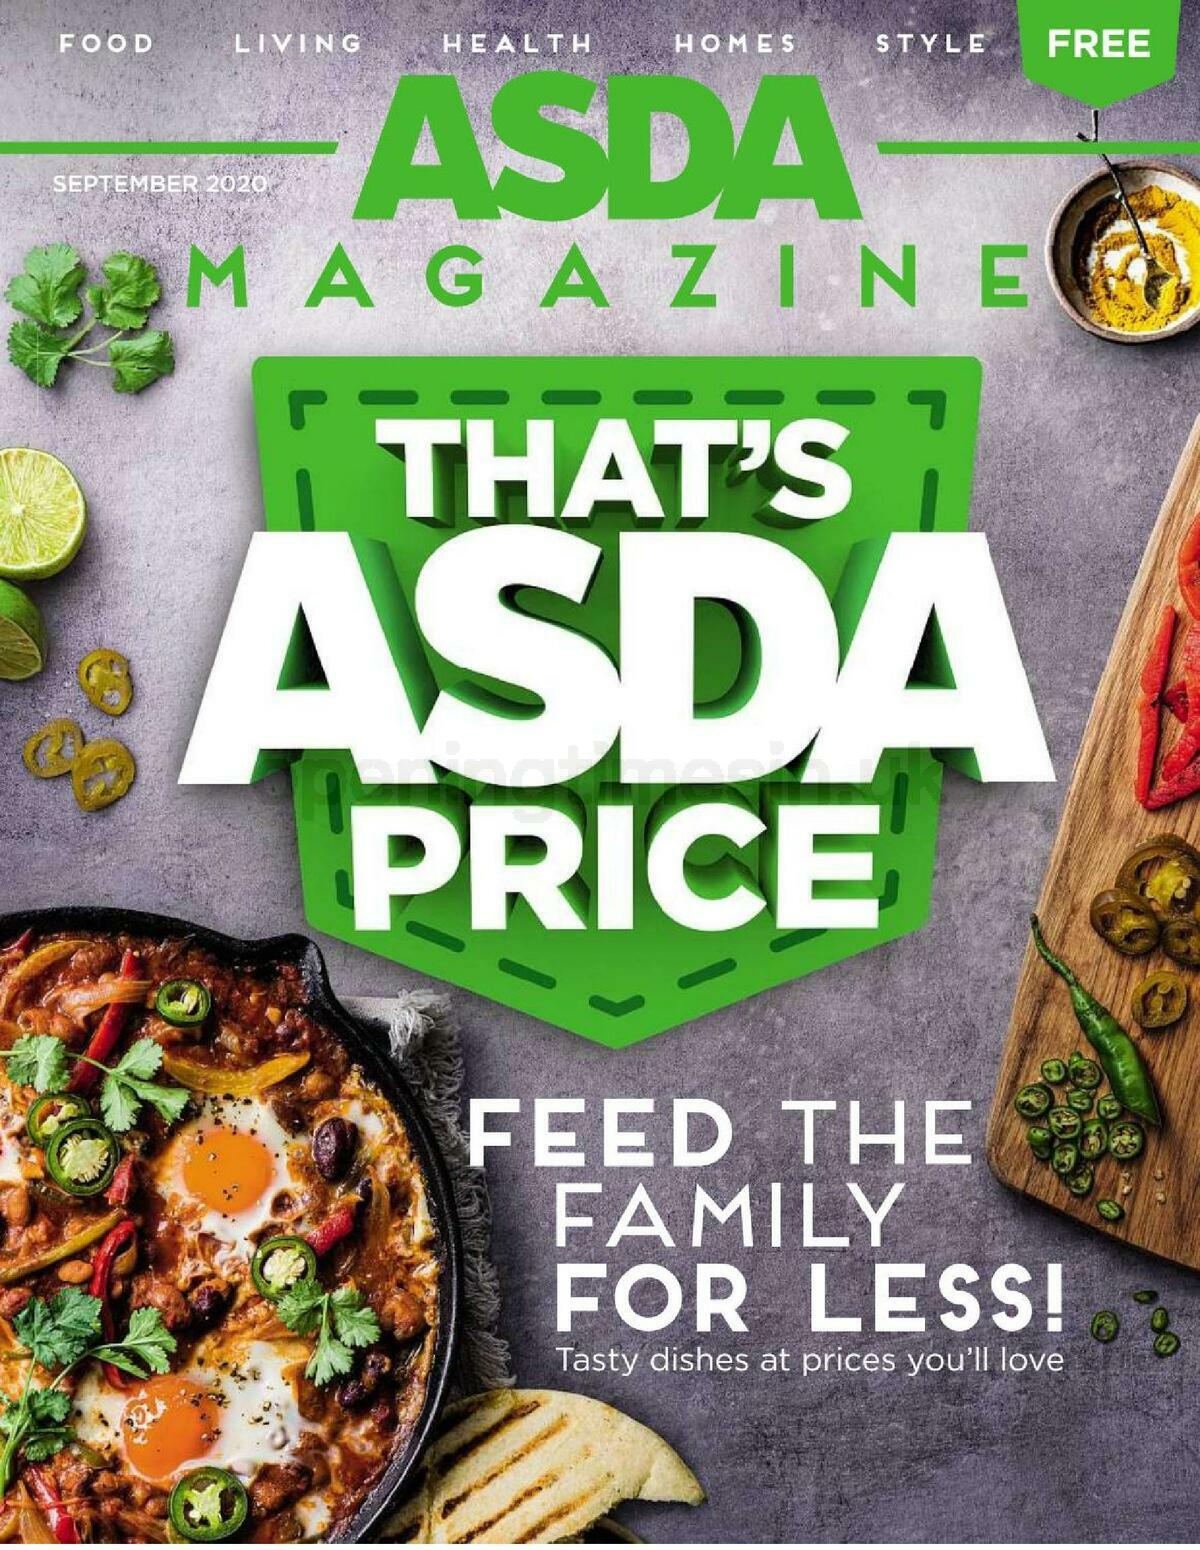 ASDA Magazine September Offers from 1 September